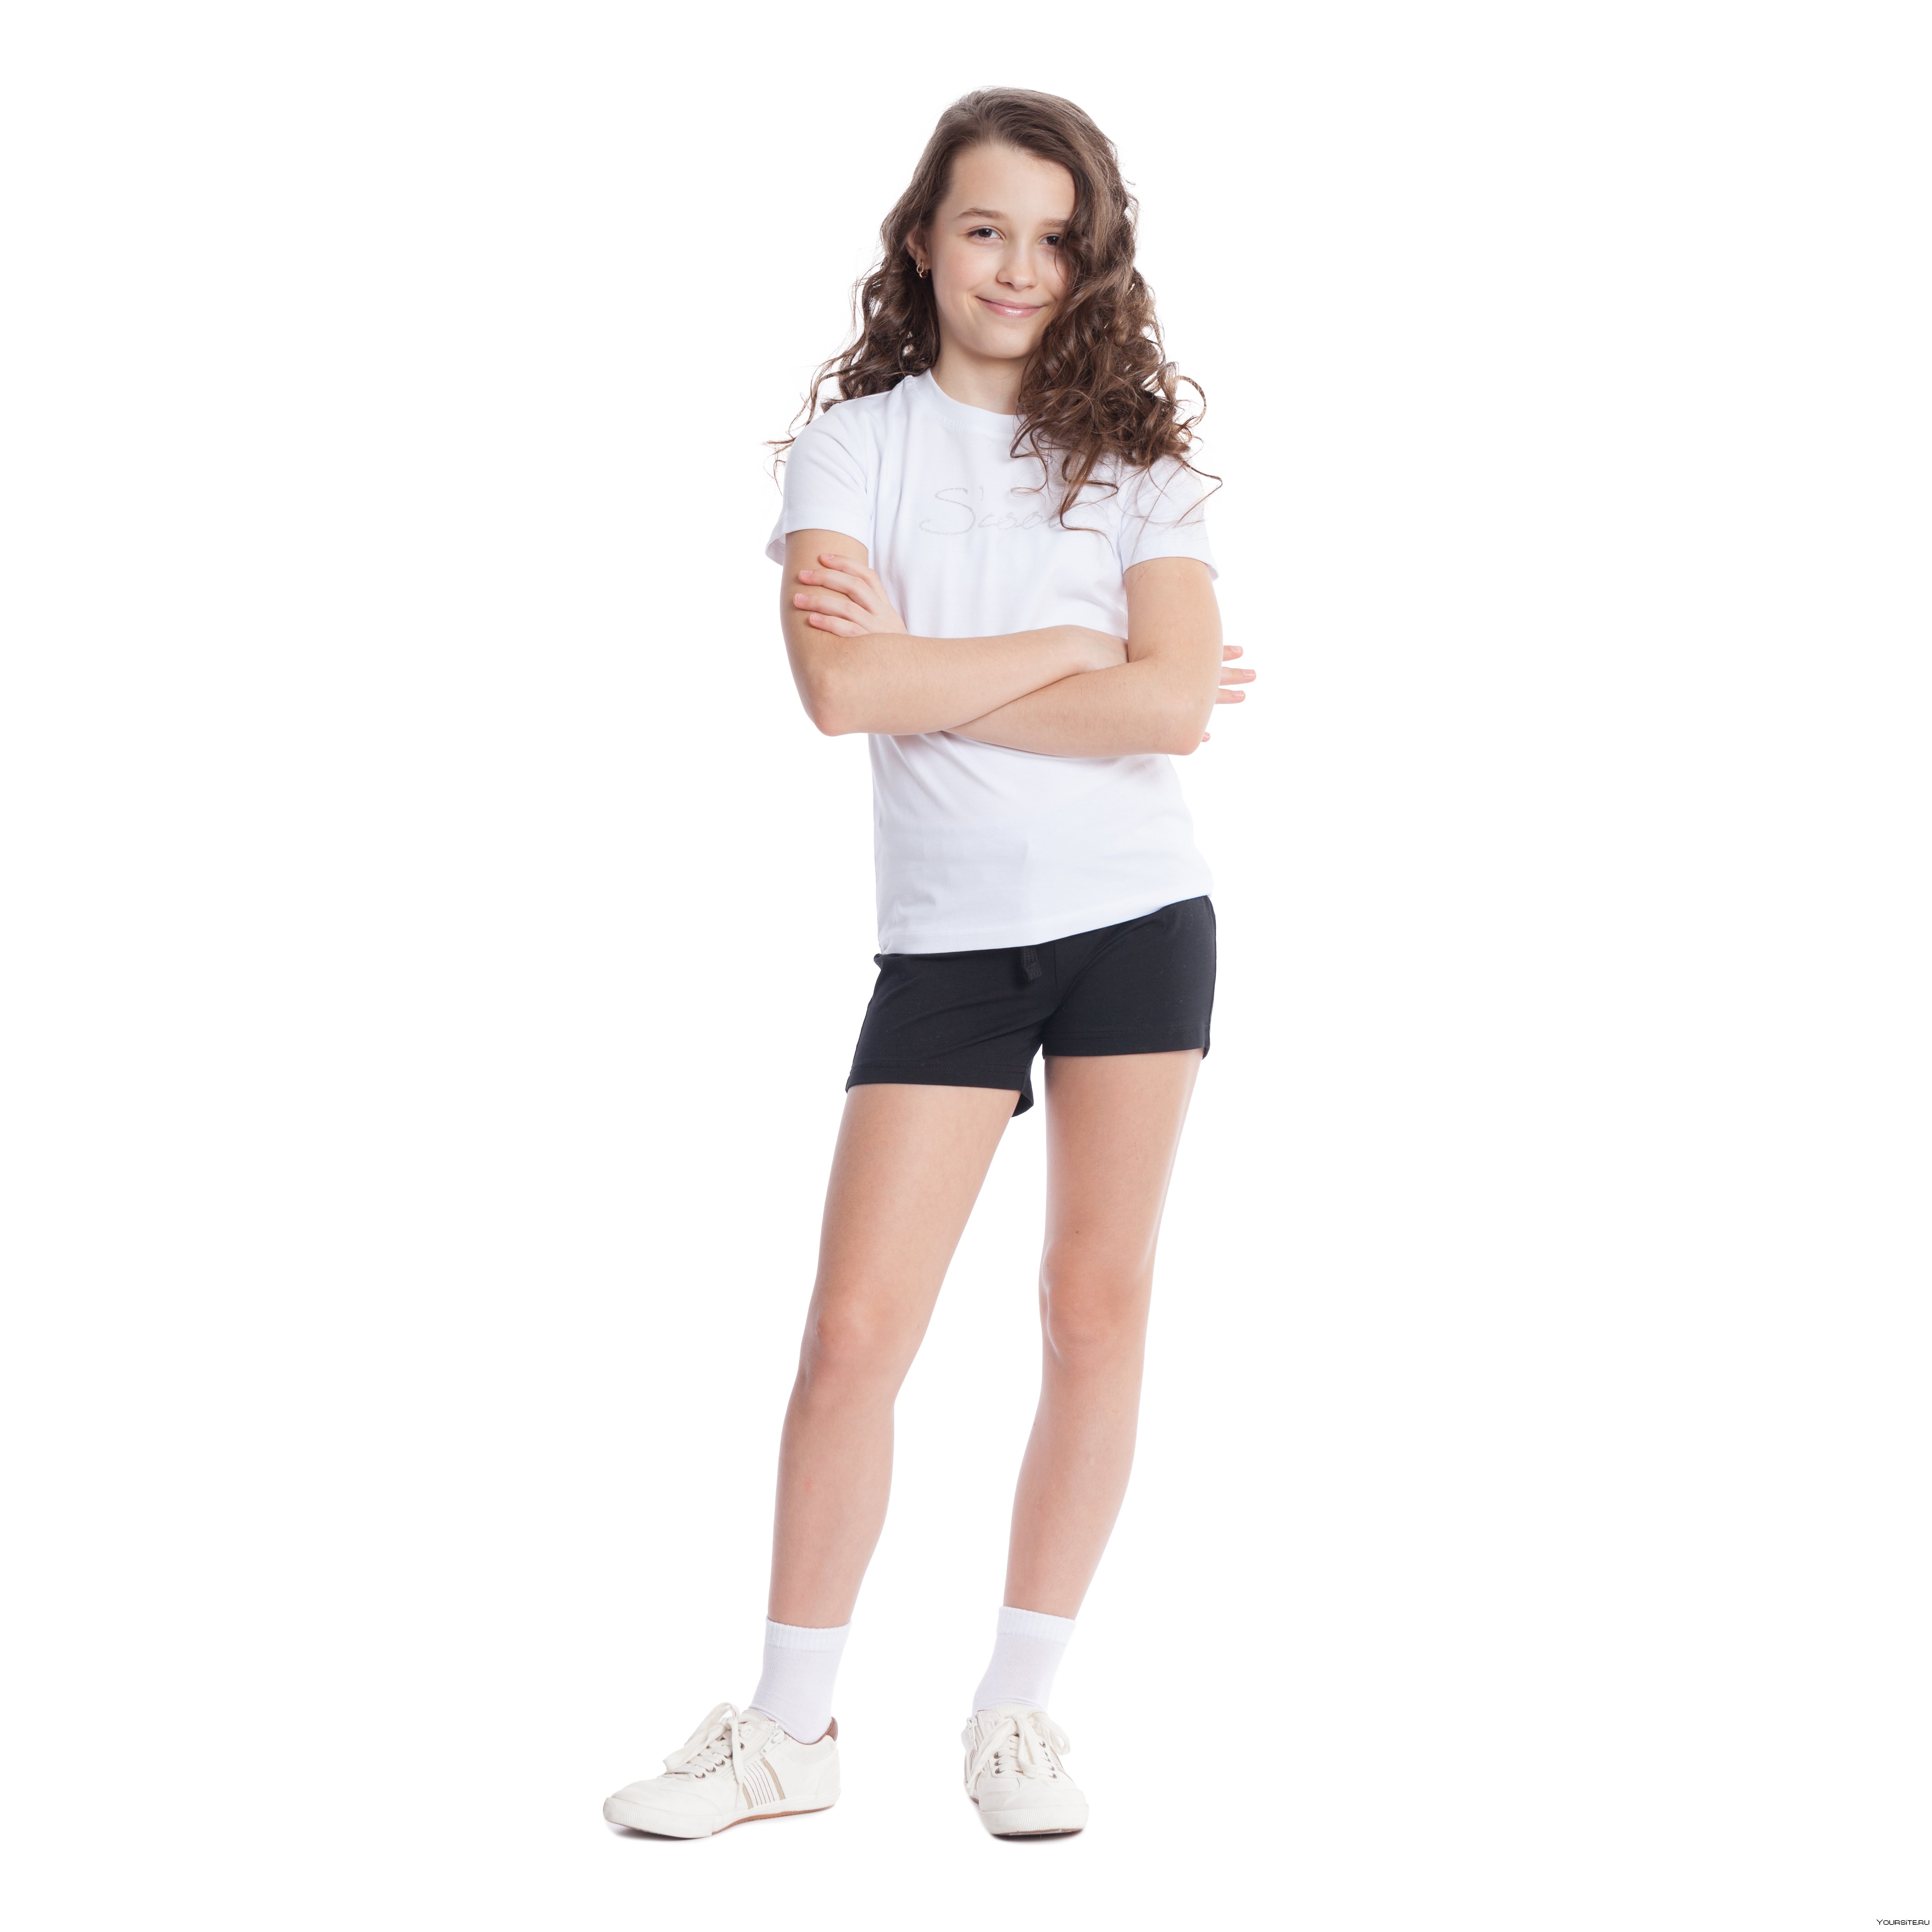 Форма шорты и футболка. Физкультурная форма для девочек. Девочка в шортах и майки. Спортивные шорты для девочек. Белая футболка и черные шорты.